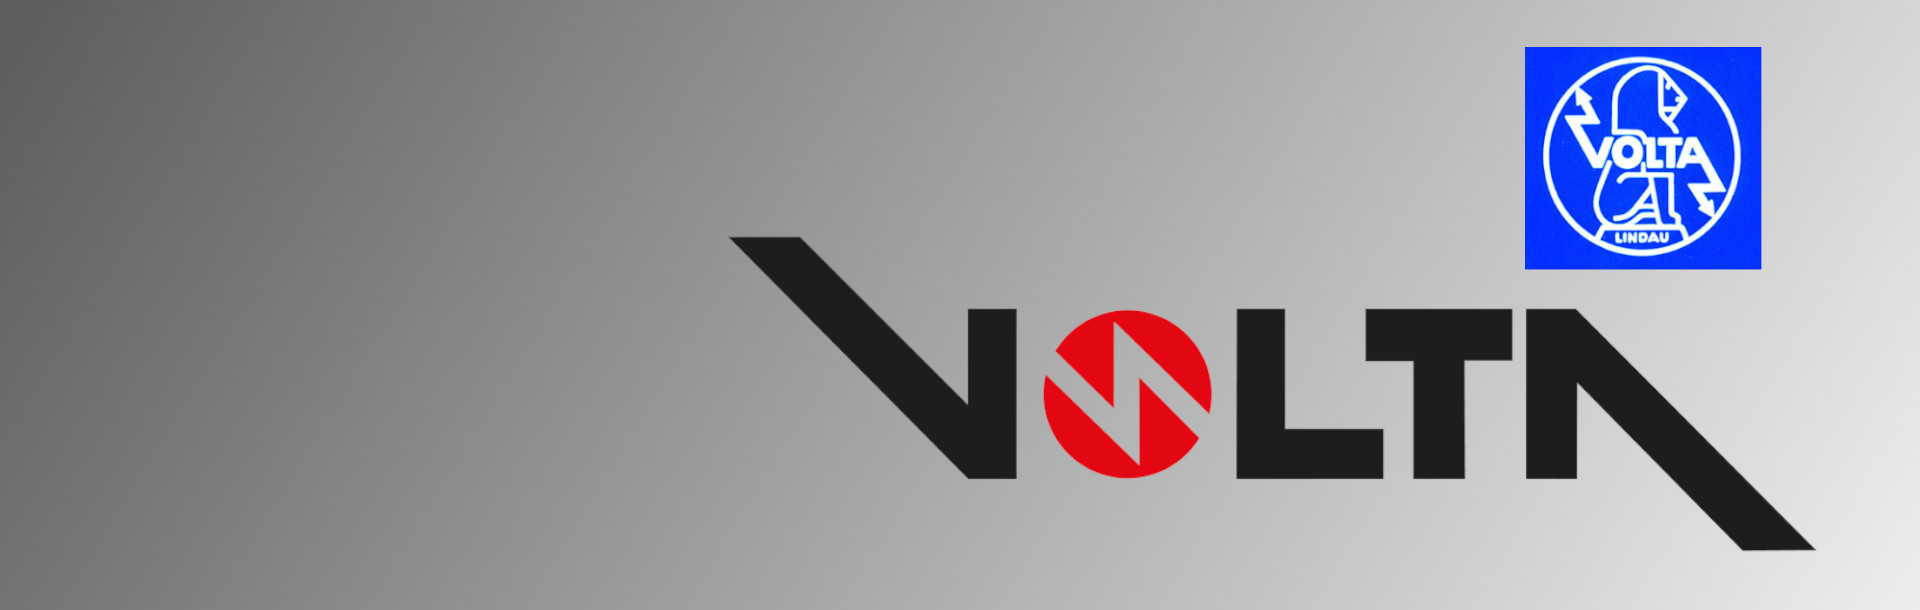 Volta-company-history